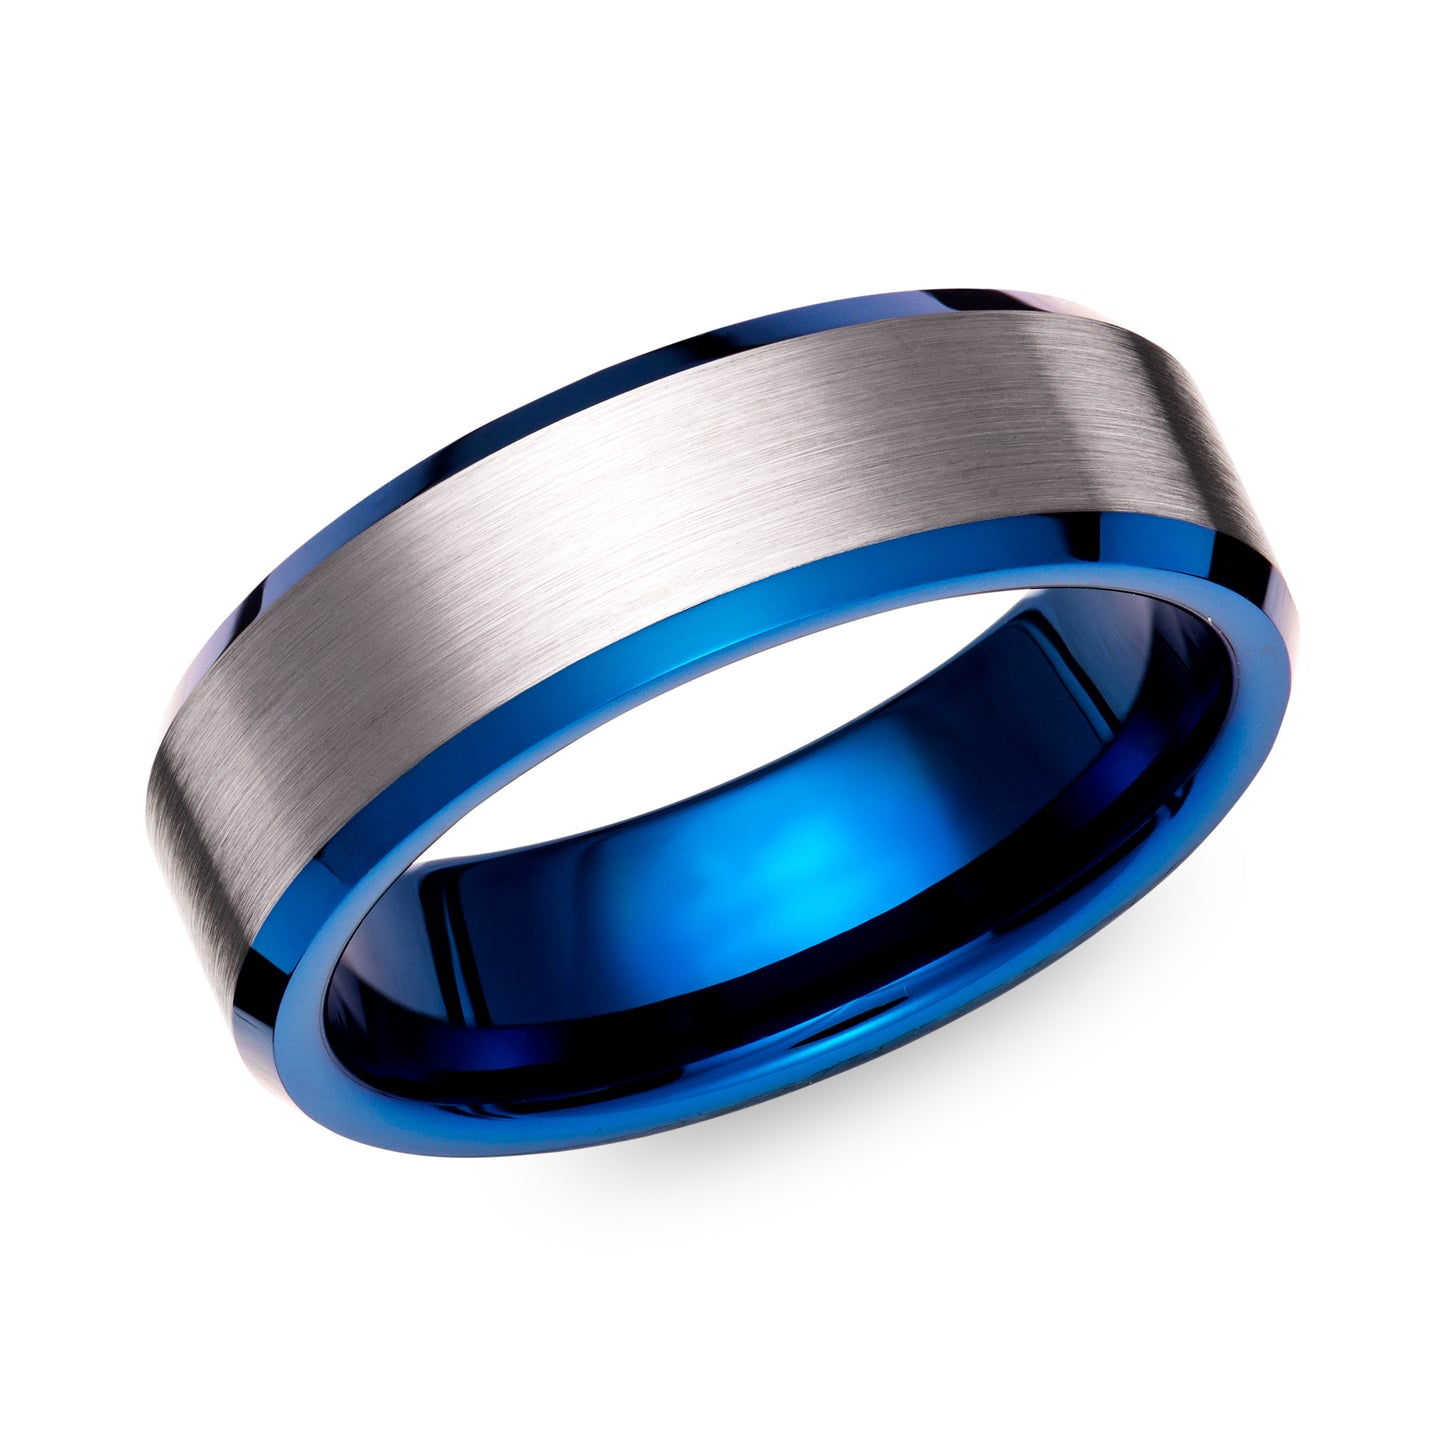 Durable tungsten carbide ring